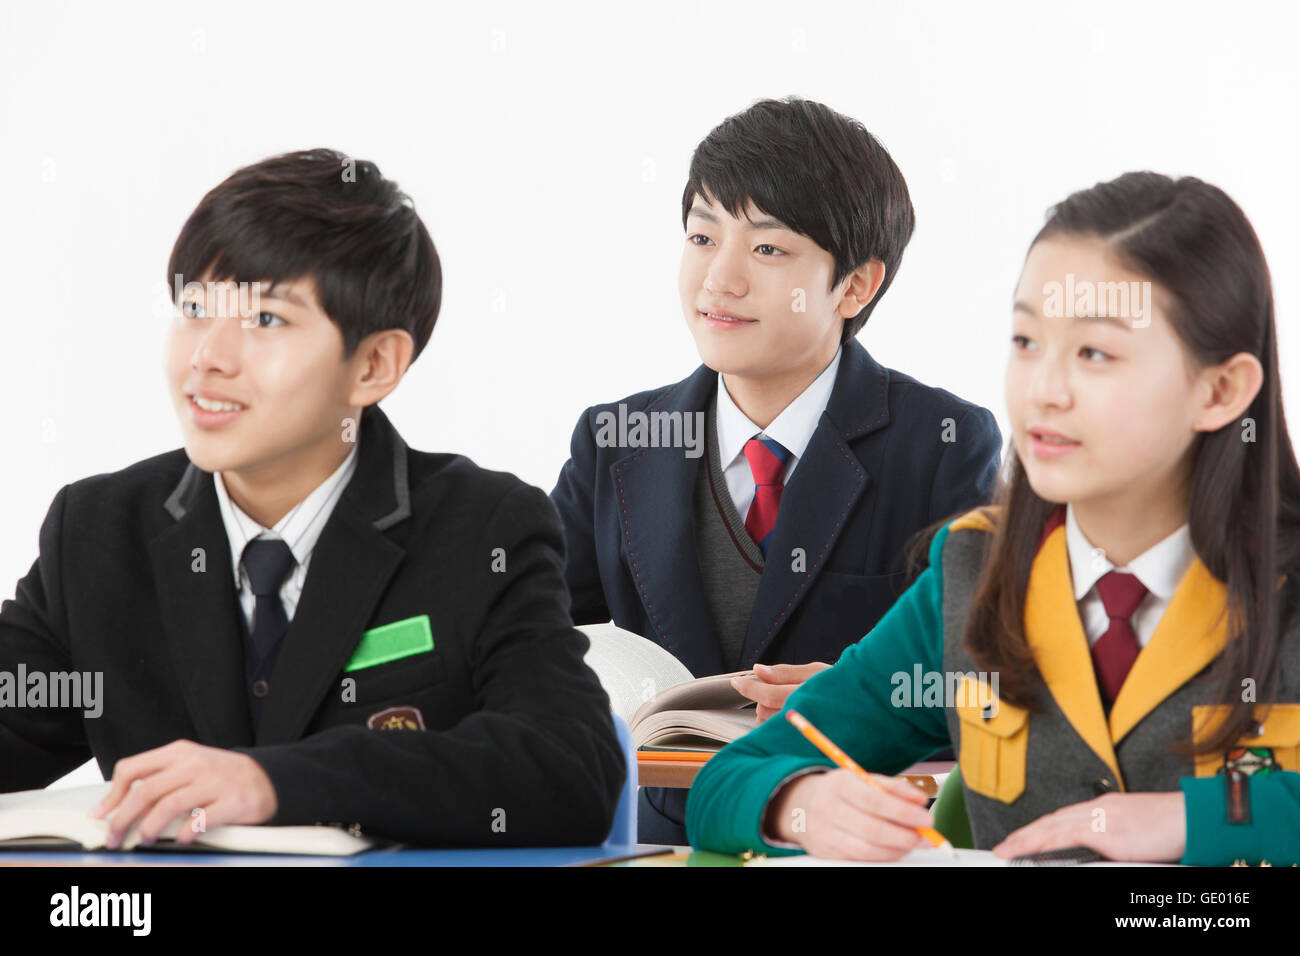 Porträt von drei Mittelschüler / innen konzentriert sich lächelnd Stockfoto